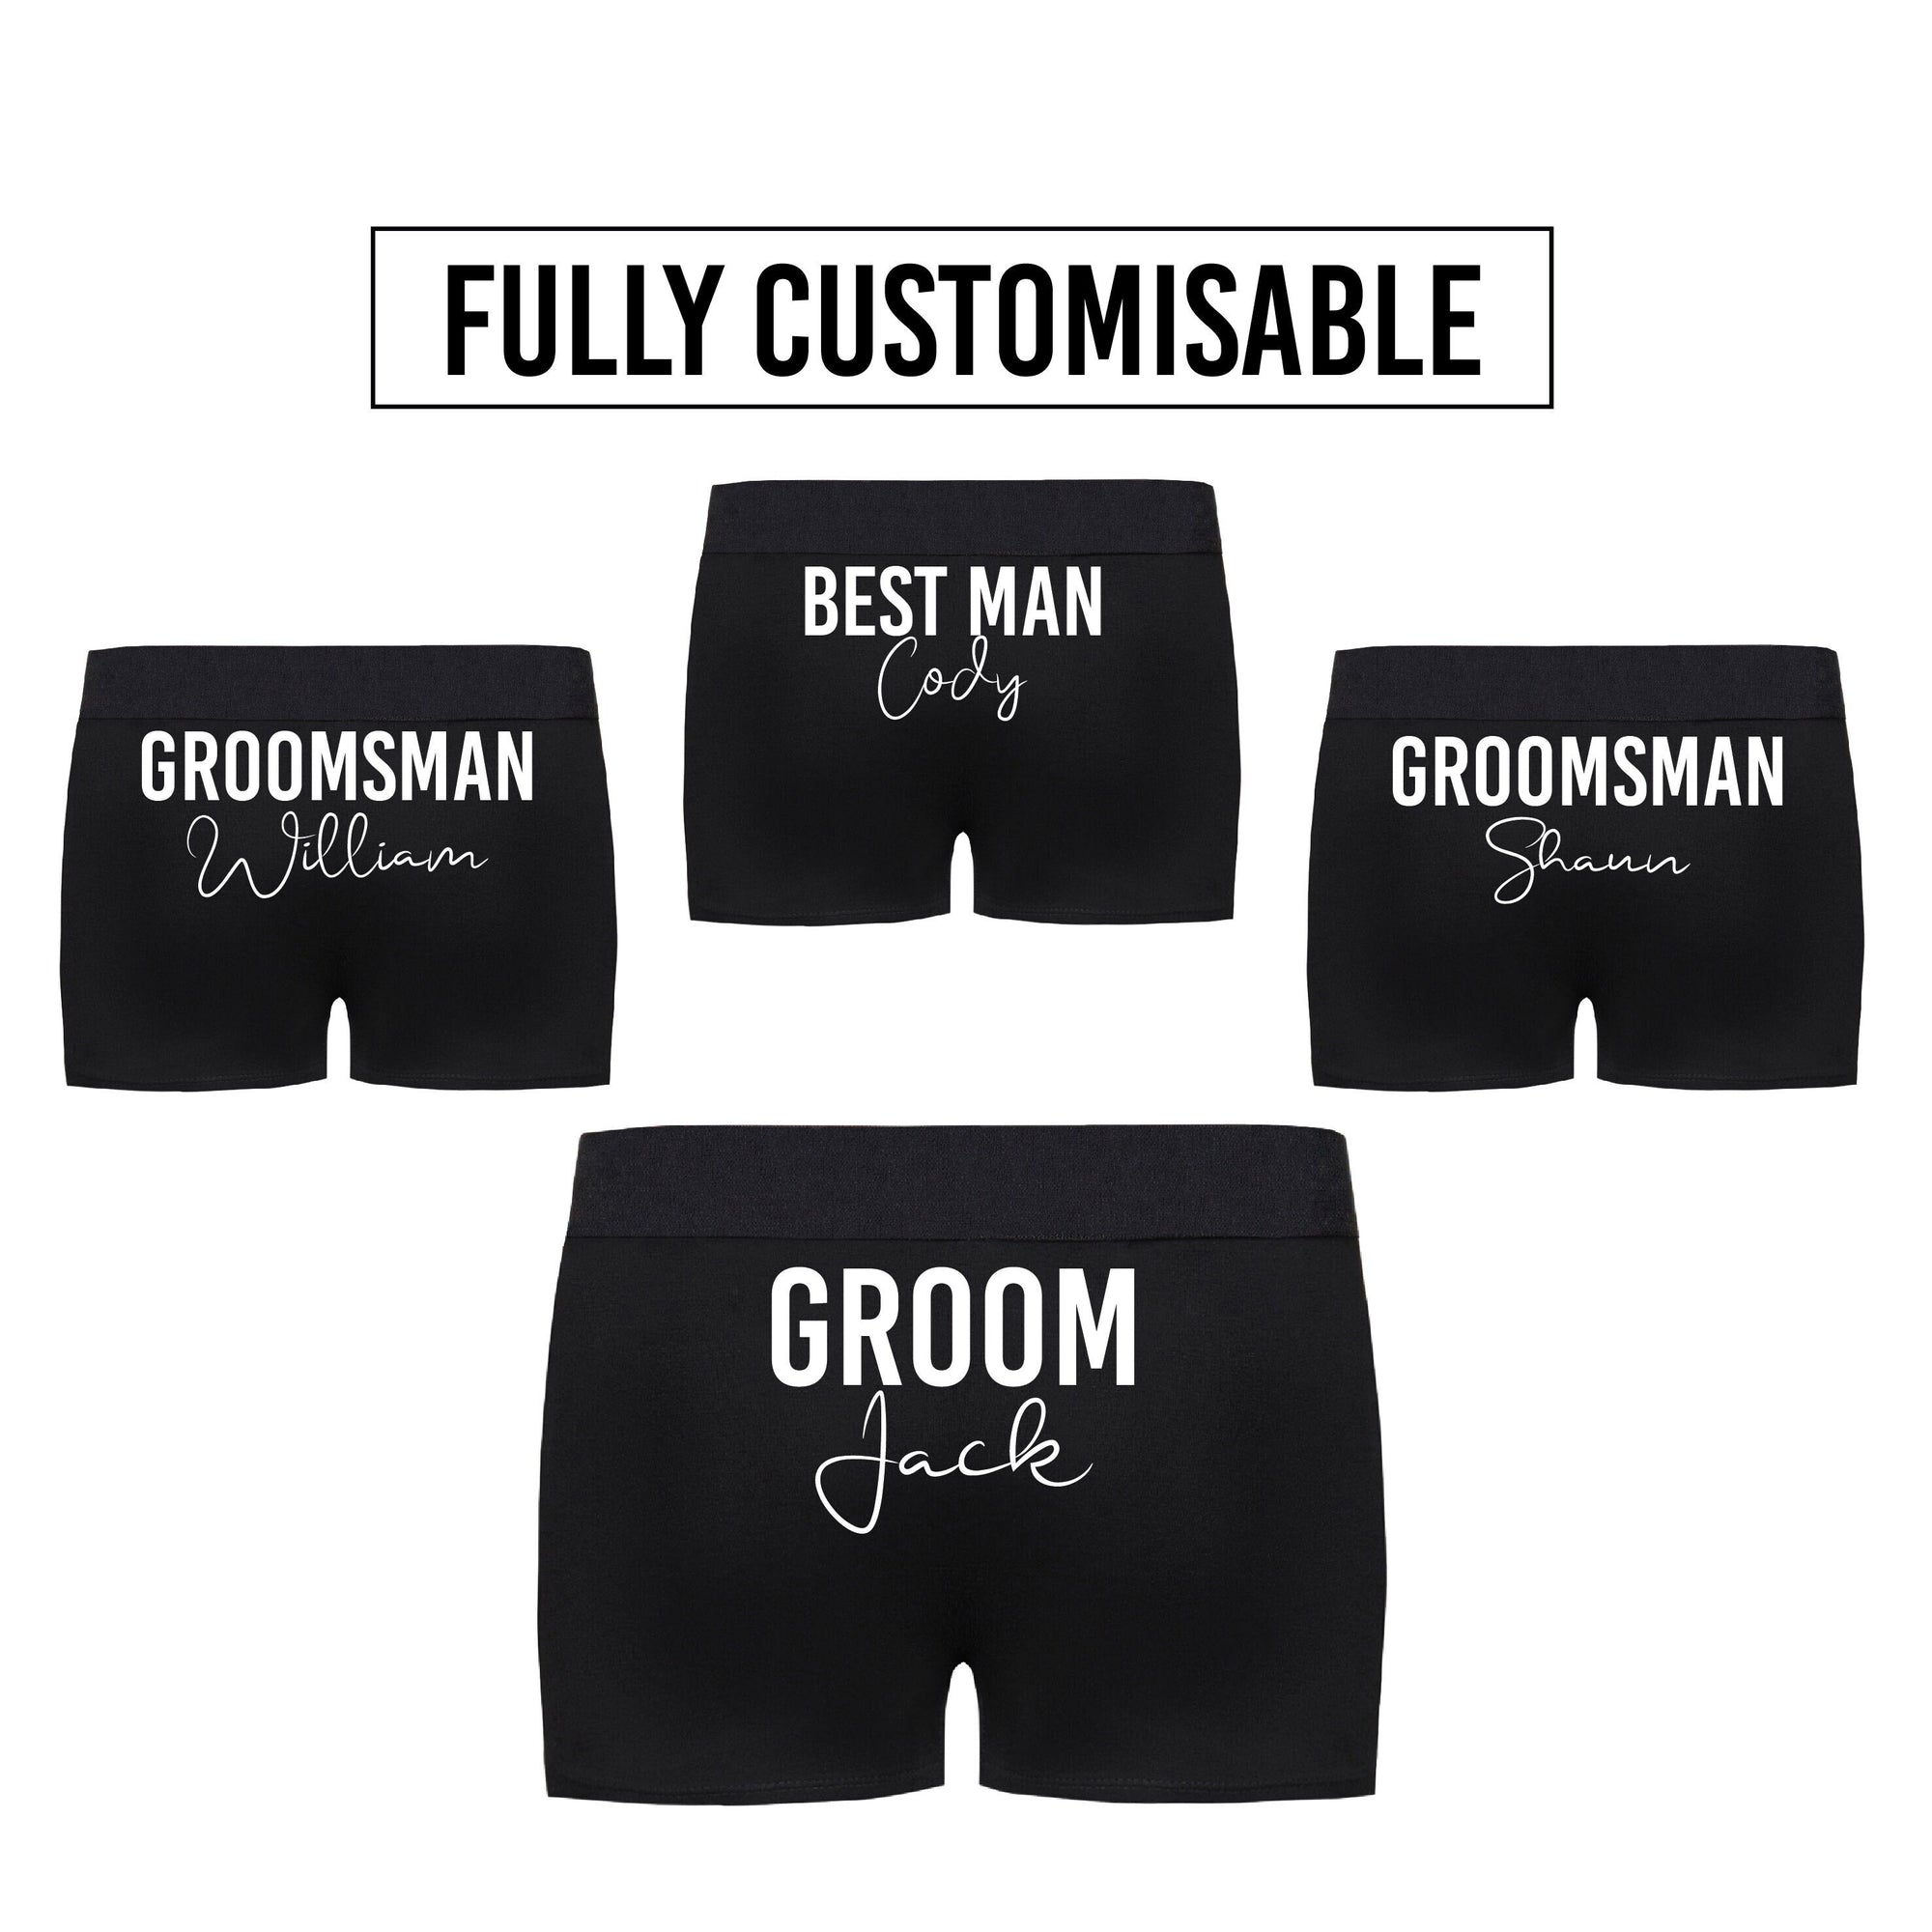 Wedding Undies, Groom Briefs, Best Man Briefs, Groomsman Briefs, Personalised Wedding Day Underwear, Quality Garments (NOT Target Kmart etc)